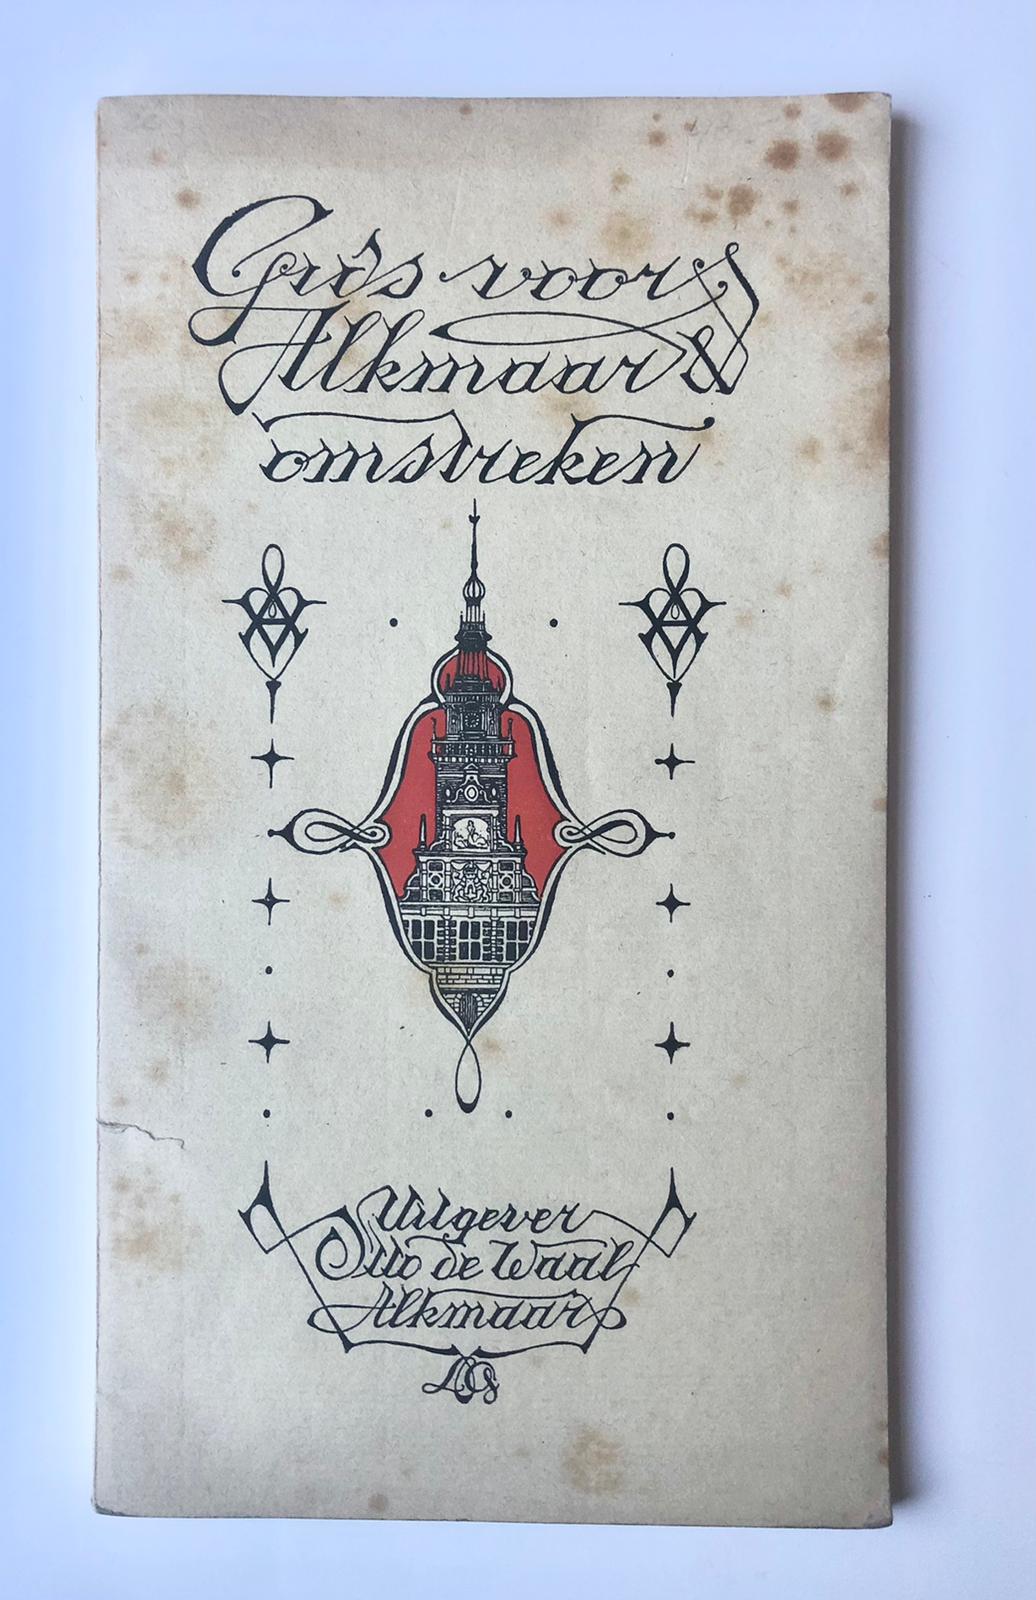 [Alkmaar, Noord-Holland] Gids voor Alkmaar & Omstreken, Door W. Wijker, Uitgevers Otto de Waal, Alkmaar, 1917, 80 pp.